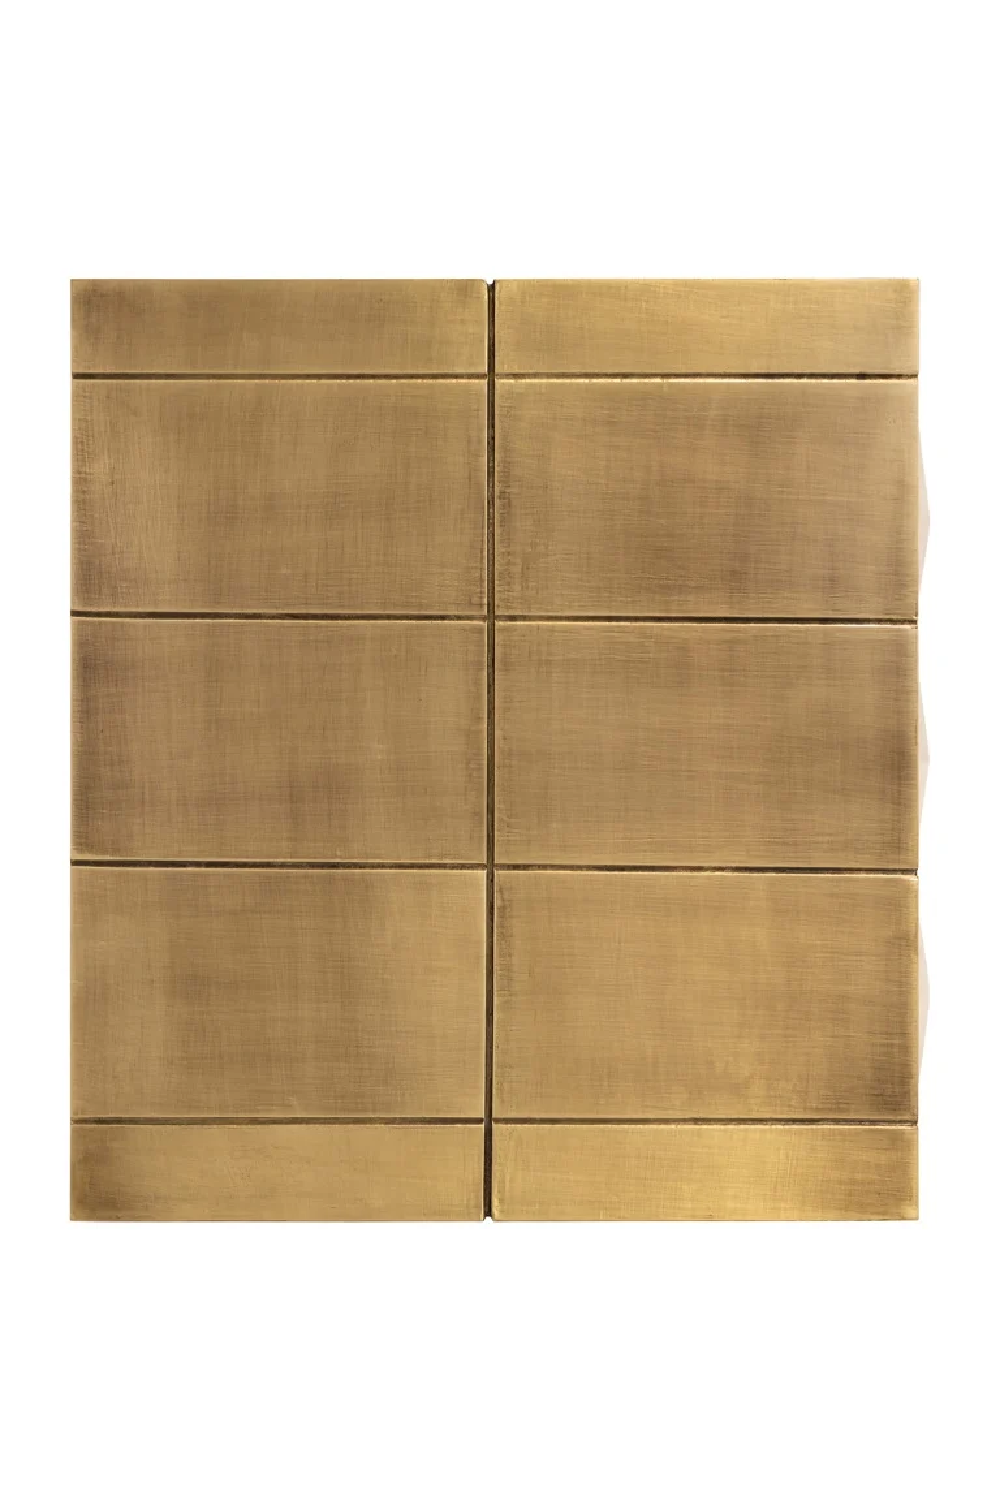 Gold Faceted Cabinet | OROA Collada | Oroa.com